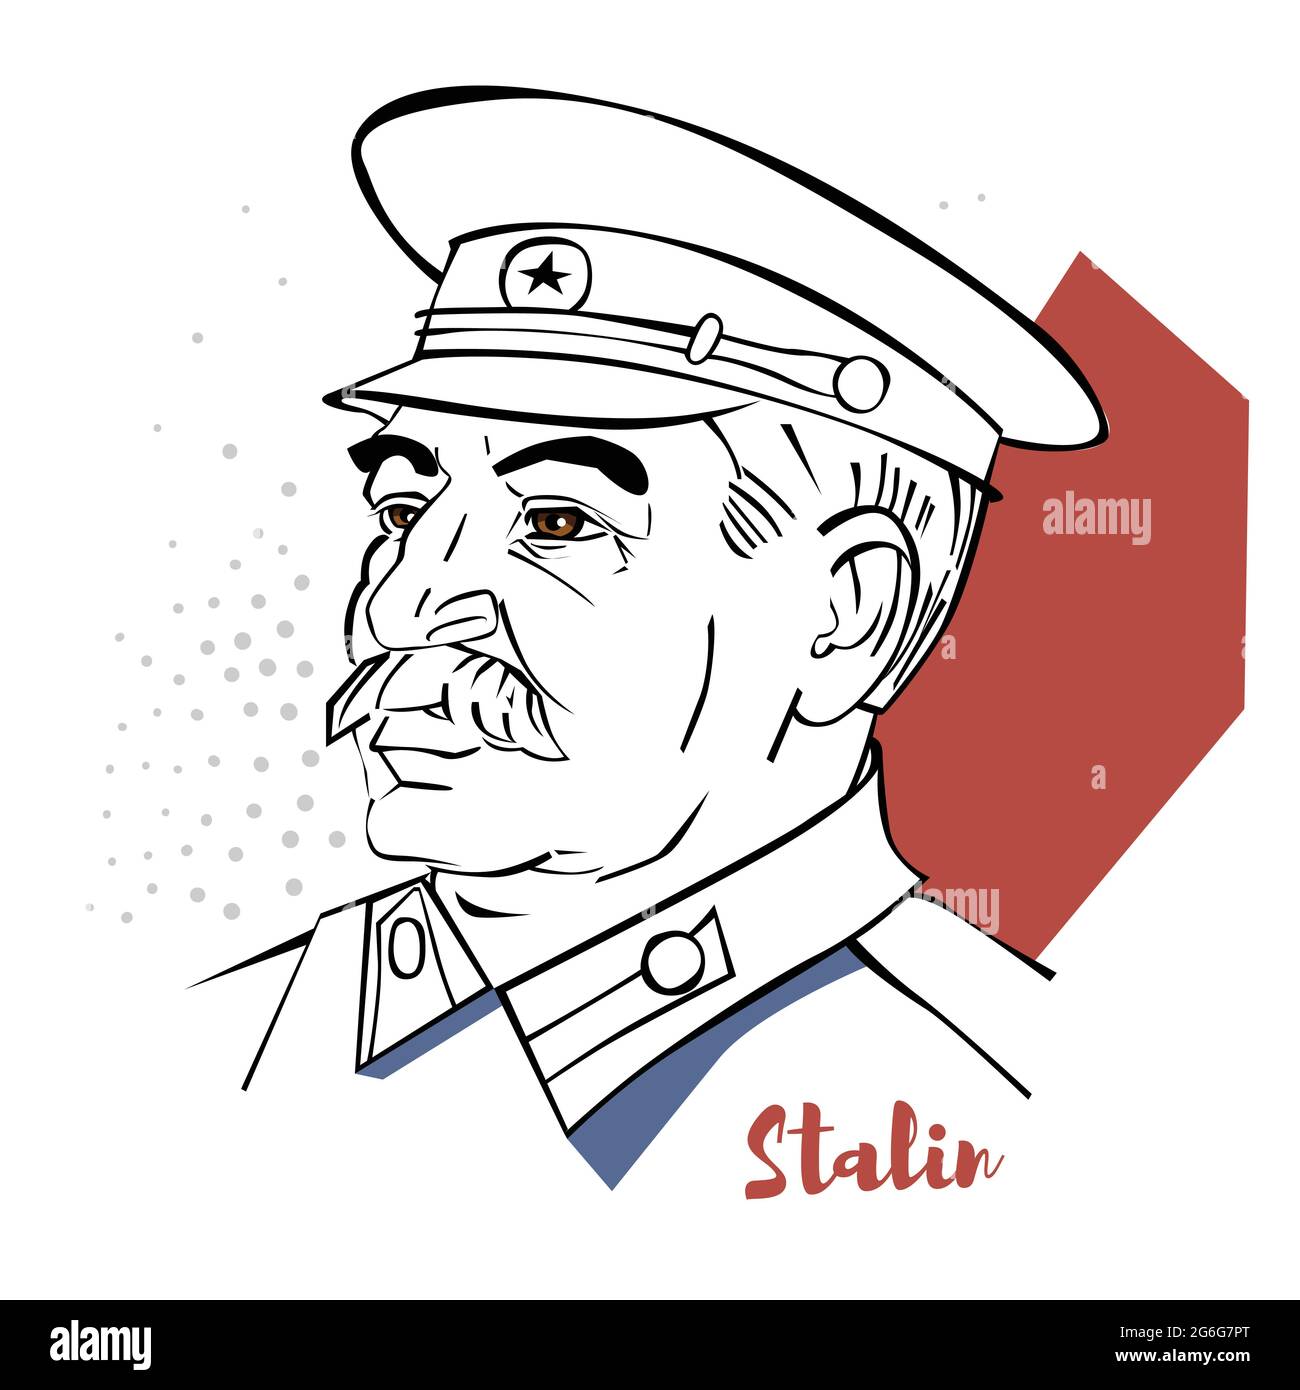 Portrait vectoriel plat de couleur Joseph Staline avec contours noirs. Révolutionnaire géorgien et politicien soviétique qui a dirigé l'Union soviétique en tant que général Secr Illustration de Vecteur